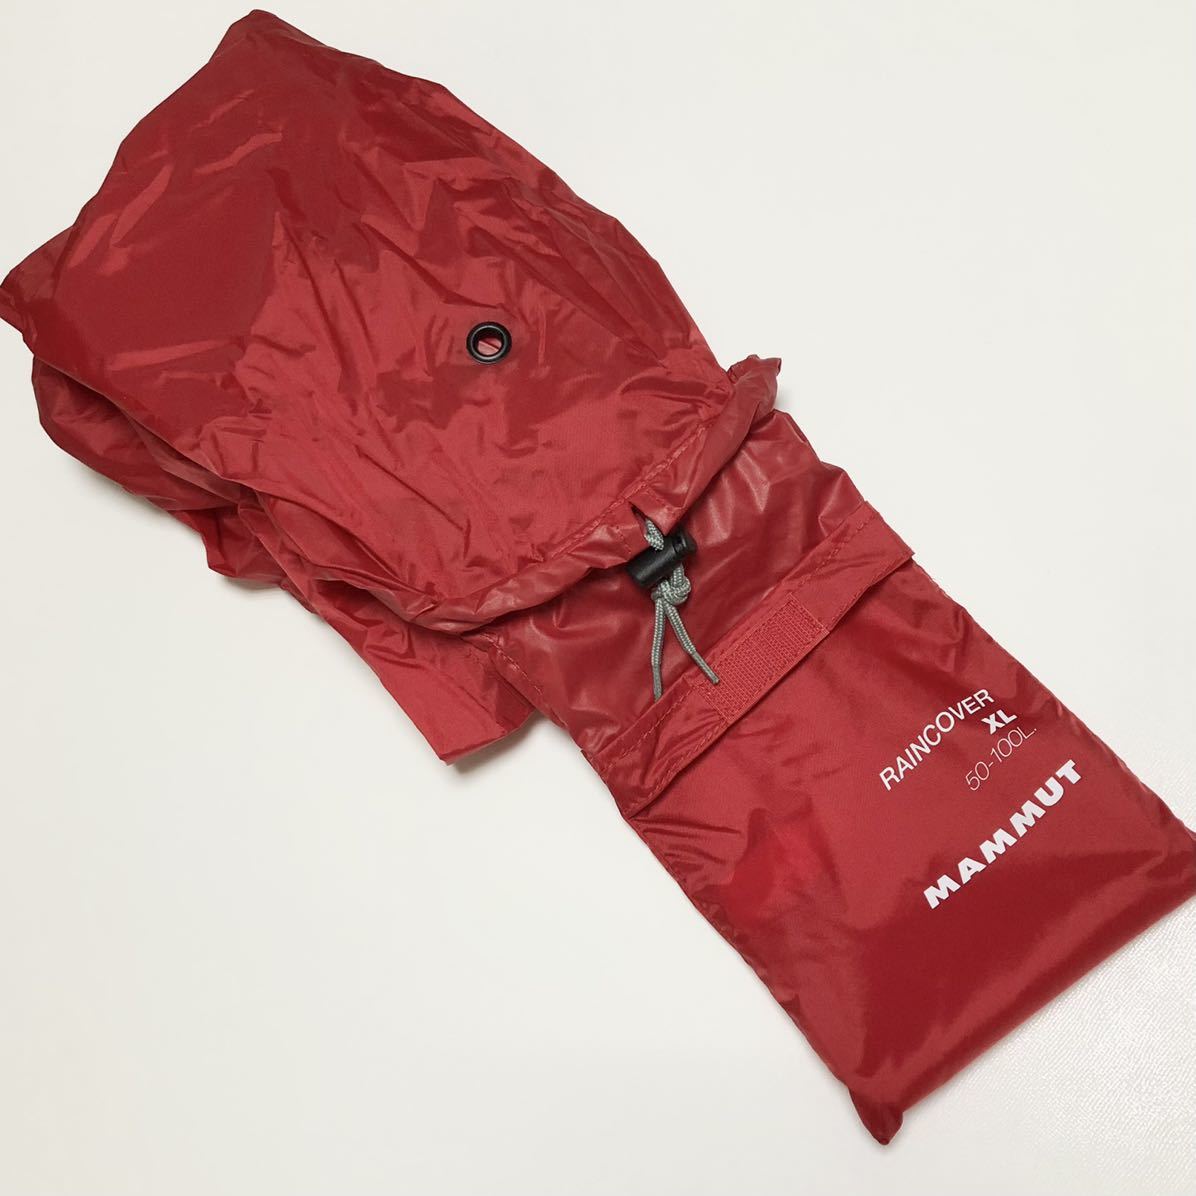 新品 マムート MAMMUT バックパック用 レインカバー XL 大型 ～100L リュック 防水 雨具 Raincover 赤 ロゴ 雨 バッグ 大きめ ビッグサイズ